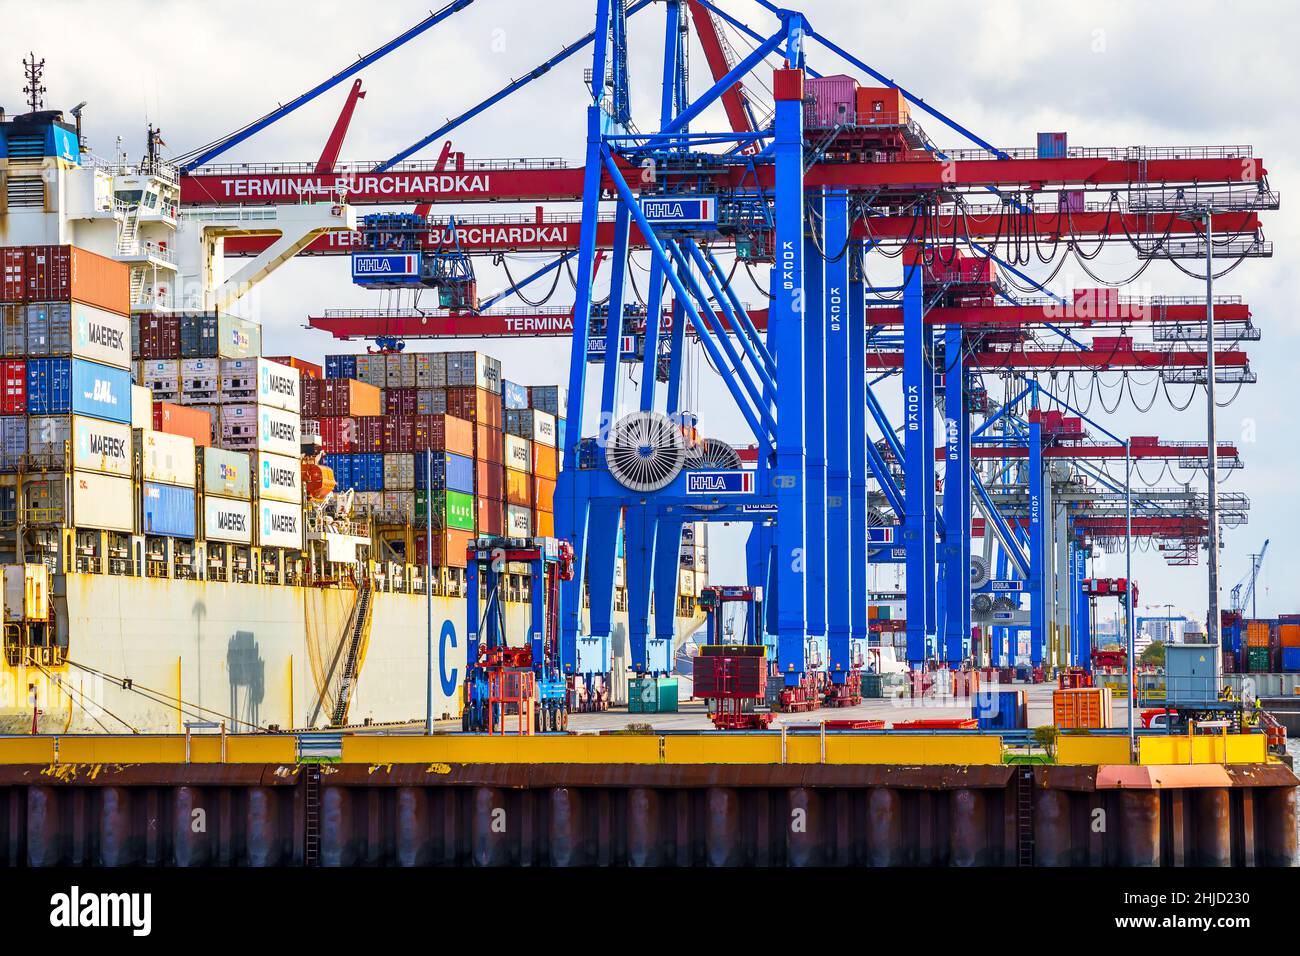 Ein Containerschiff wird tagsüber im Hamburger Hafen beladen; mit blau-rote Containerbrücken werden die Container an die richtige Position bugsiert Stock Photo